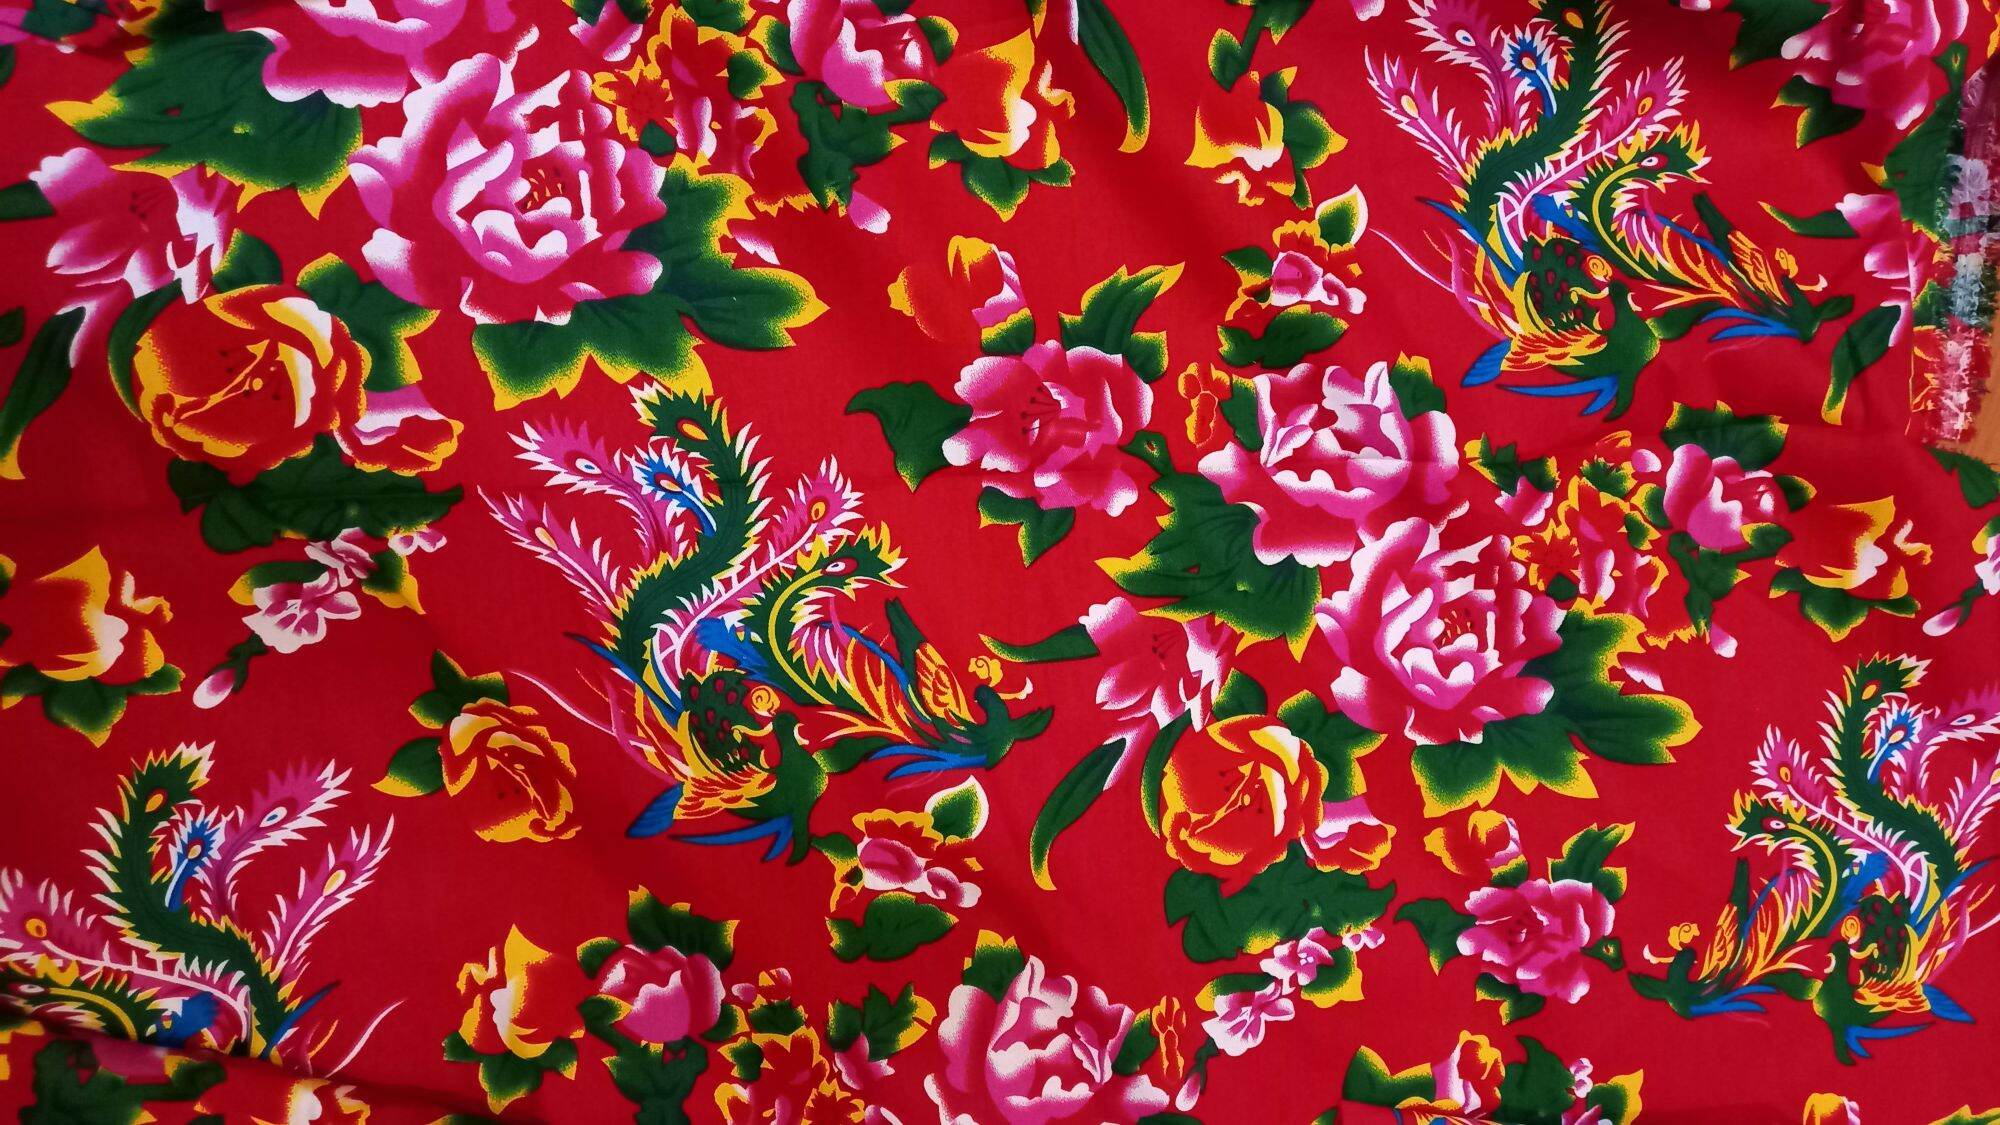 Vải con công vải họa tiết chim công đỏ khổ rộng 1m5 dùng để trang trí Tết  dùng sưu tầm hoài cổ vải đỏ làm khăn phủ bàn vải trang trí Tết Trung thu vải may vỏ gối